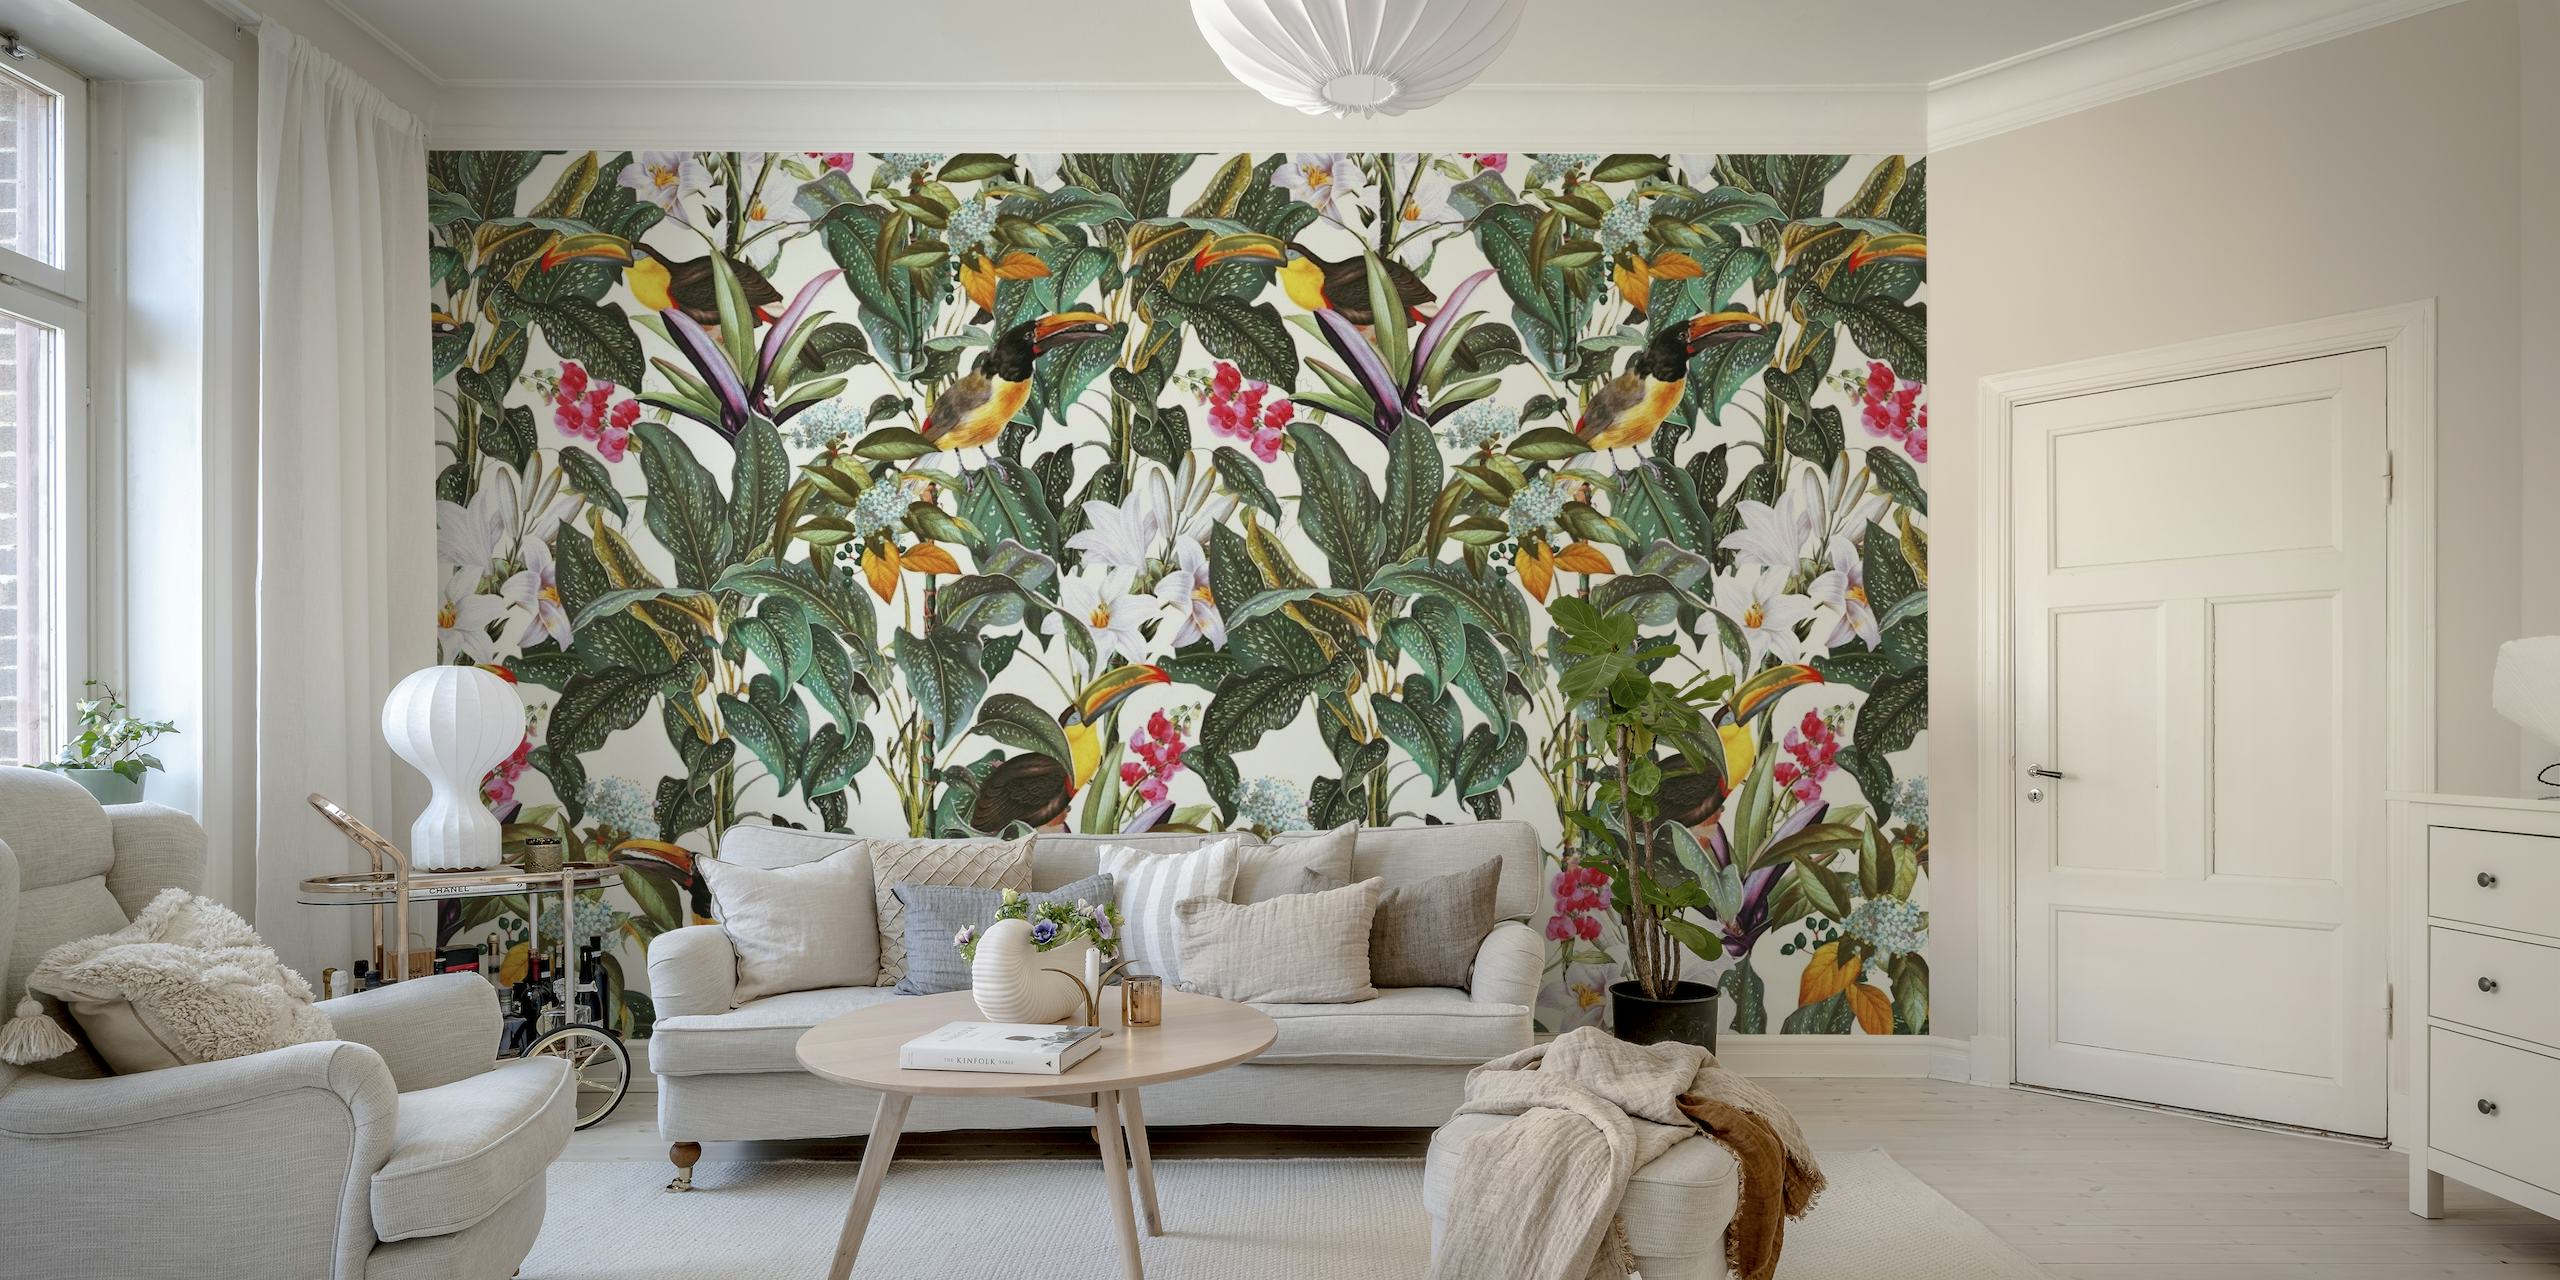 Mural de parede Tropical Tucan Garden com tucanos vibrantes e flores exóticas